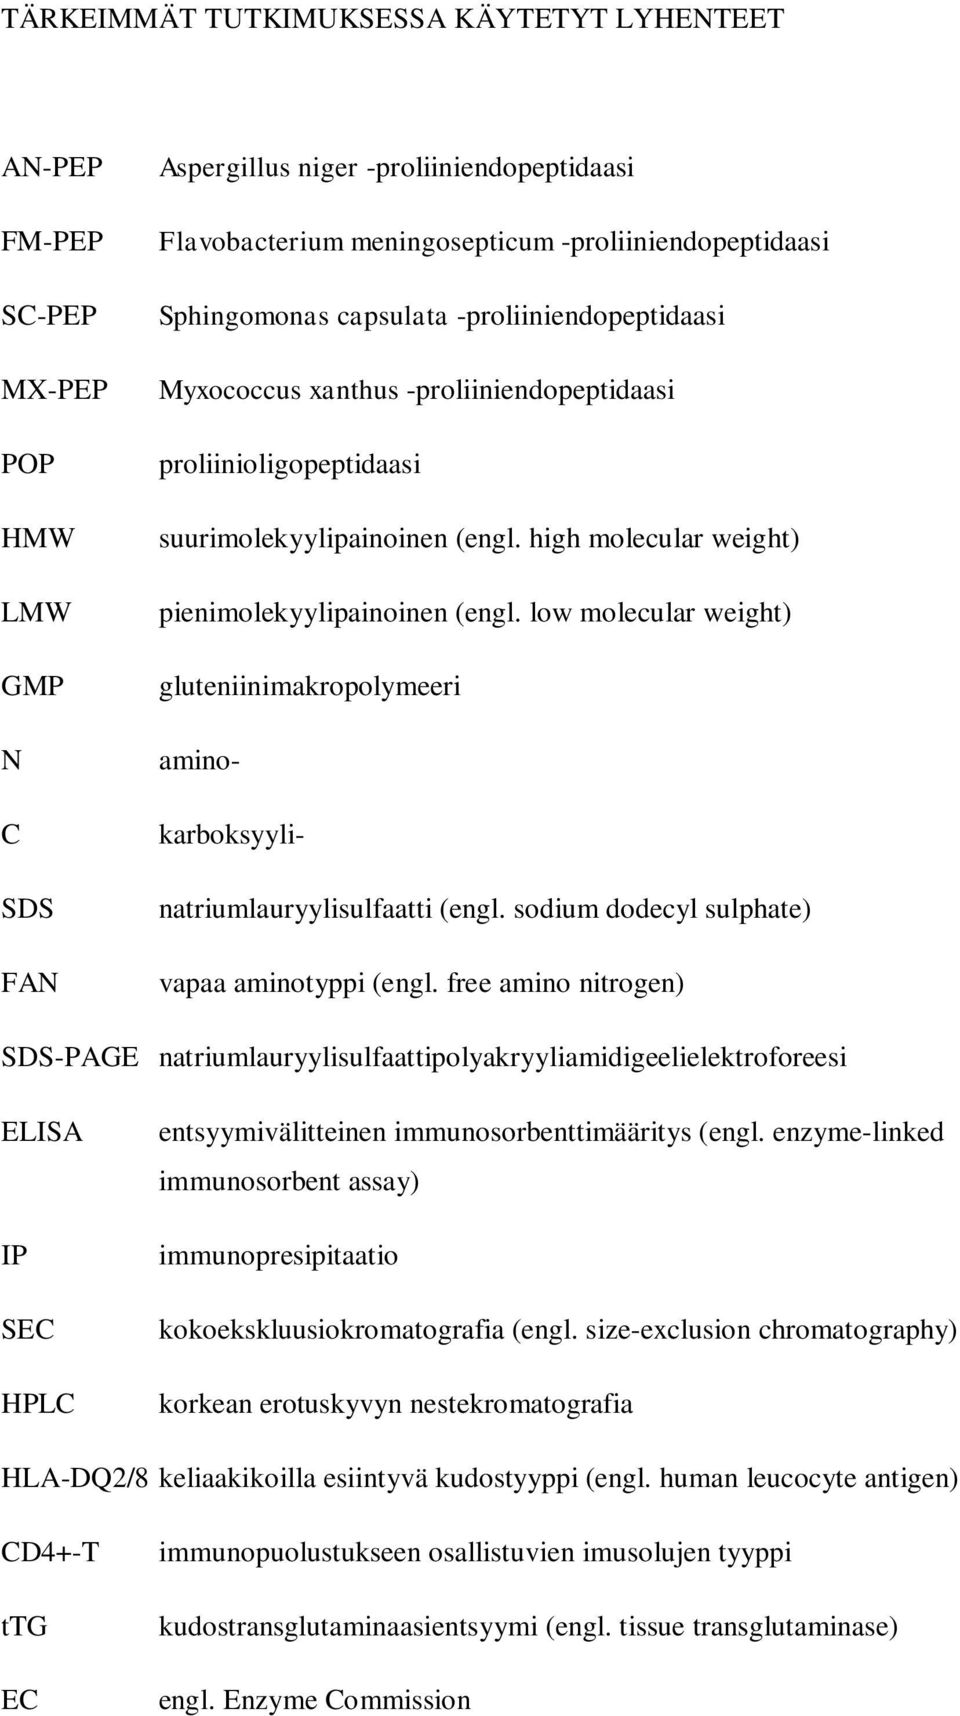 low molecular weight) gluteniinimakropolymeeri aminokarboksyylinatriumlauryylisulfaatti (engl. sodium dodecyl sulphate) vapaa aminotyppi (engl.